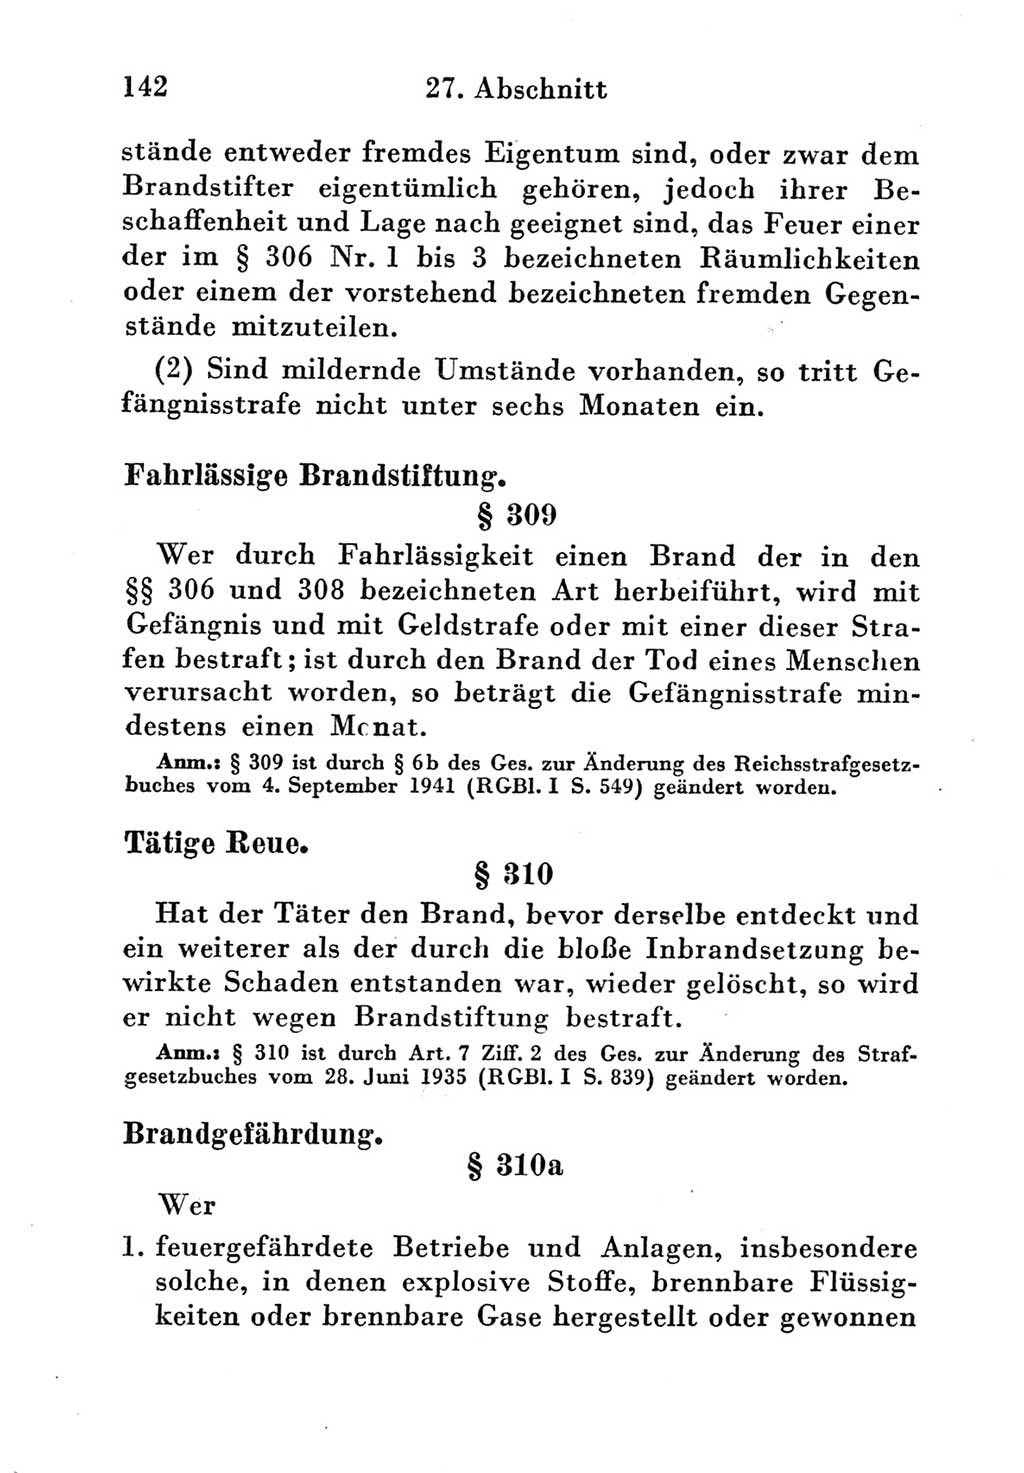 Strafgesetzbuch (StGB) und andere Strafgesetze [Deutsche Demokratische Republik (DDR)] 1951, Seite 142 (StGB Strafges. DDR 1951, S. 142)